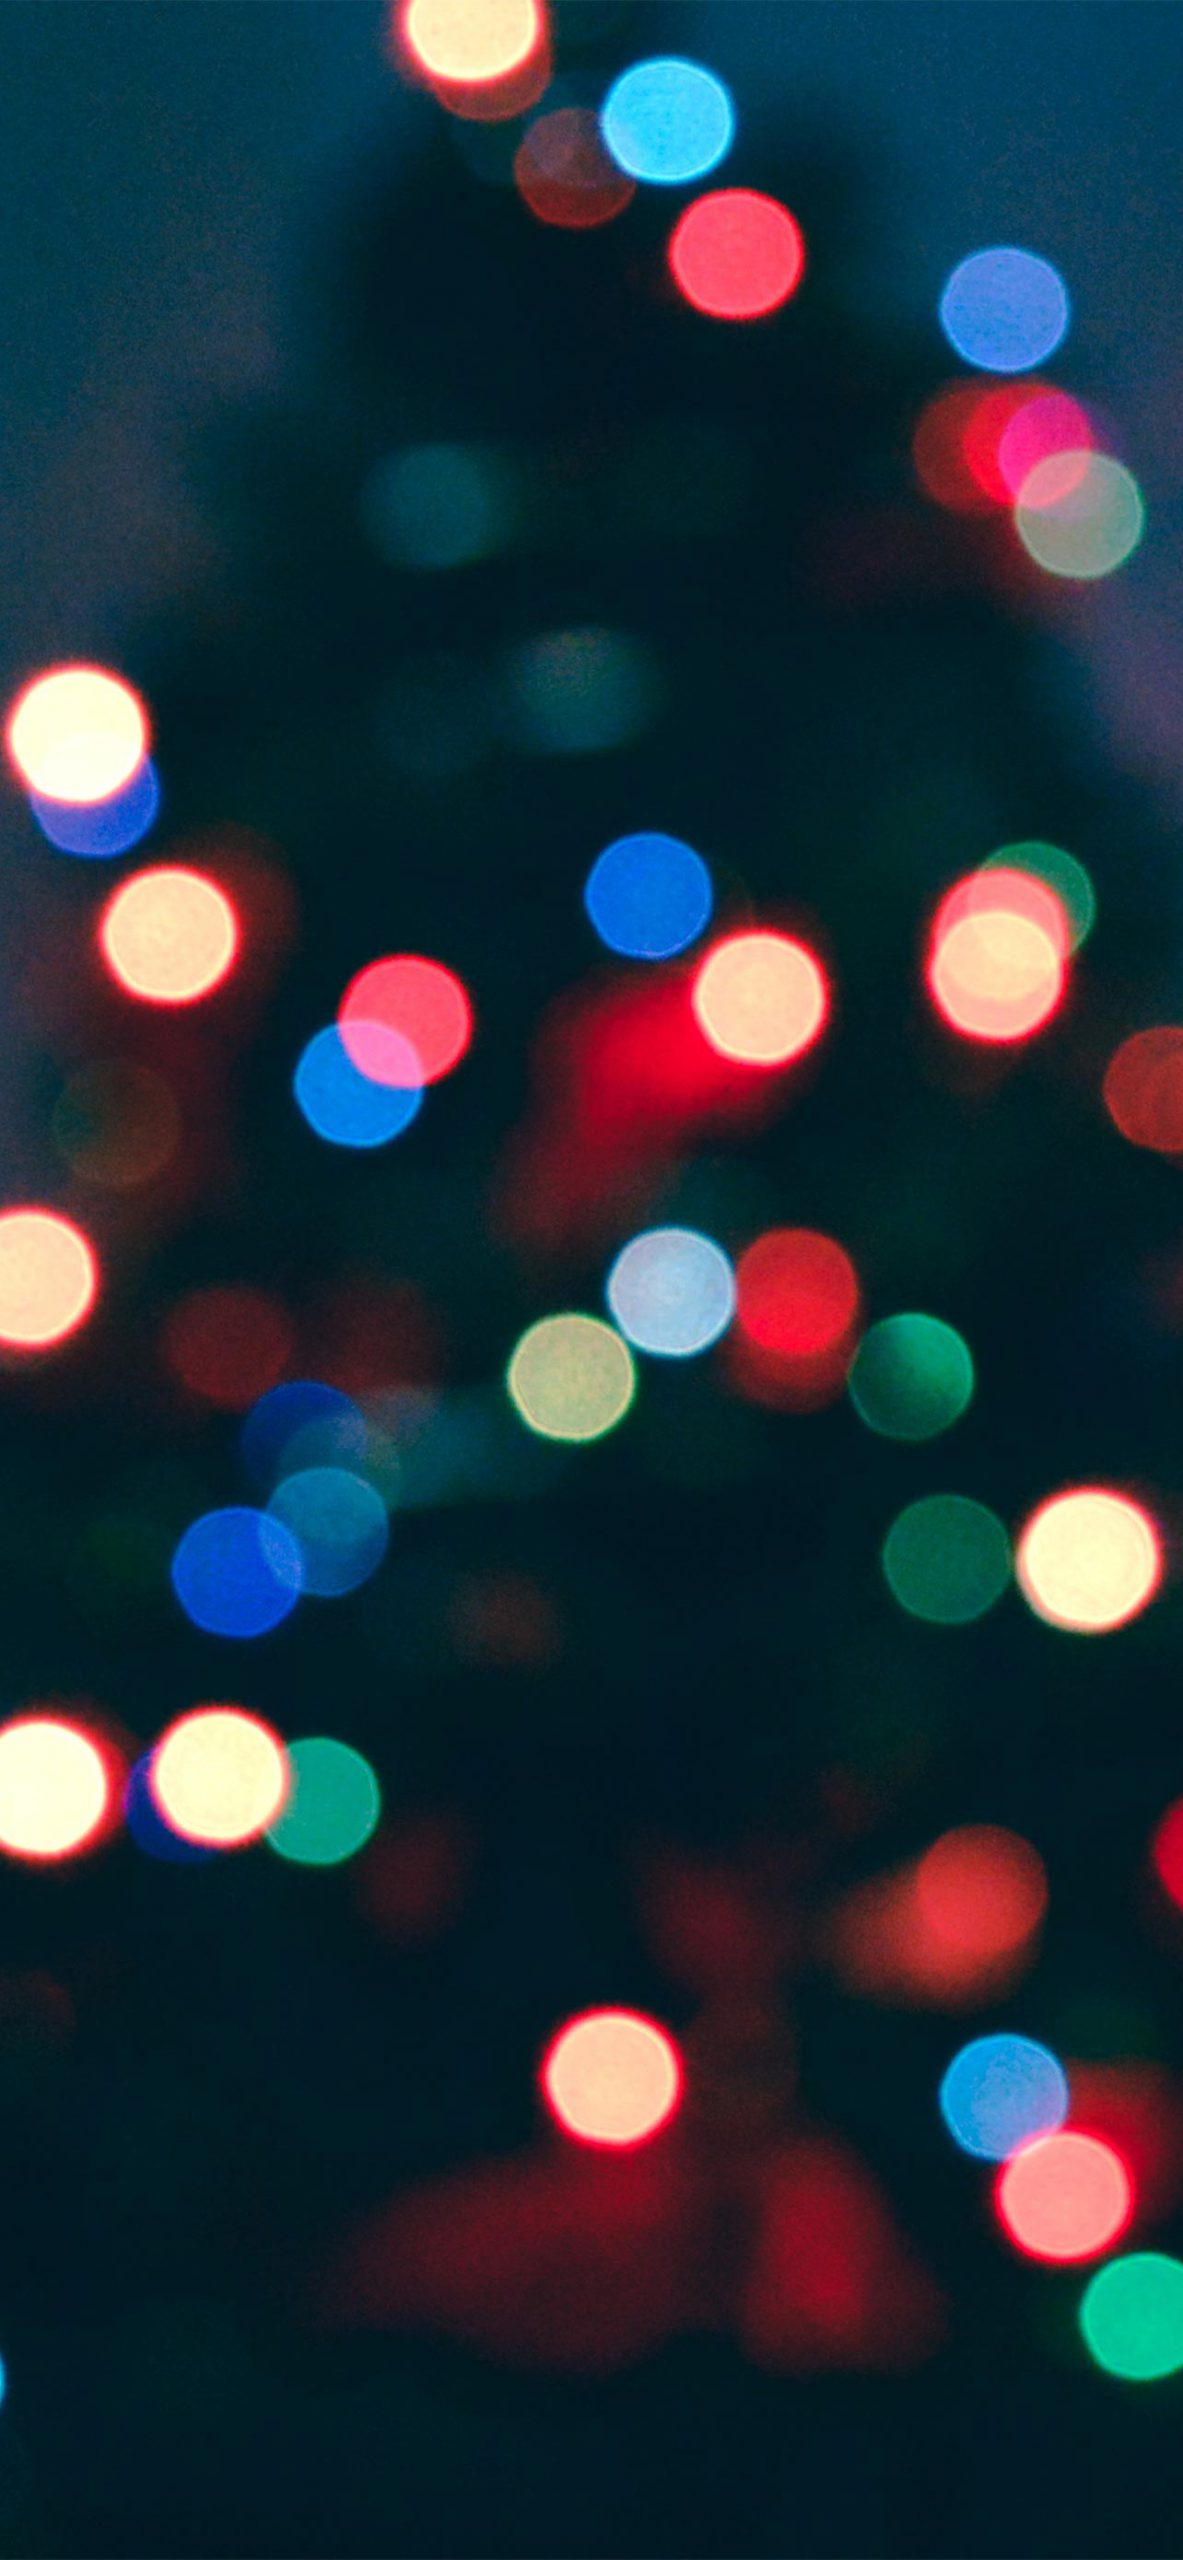 Cùng đón Giáng Sinh với những hình nền đẹp mắt và ấm áp nhất trên chiếc iPhone 13 Pro Max của bạn! Tại đây, chúng tôi có một bộ sưu tập bao gồm những hình nền đỏ lửa, rực rỡ, hoặc những tấm hình với không gian tuyết phủ cực kỳ lãng mạn và tuyệt đẹp. Hãy thỏa sức lựa chọn và cùng kết nối với không khí Giáng Sinh nhé!